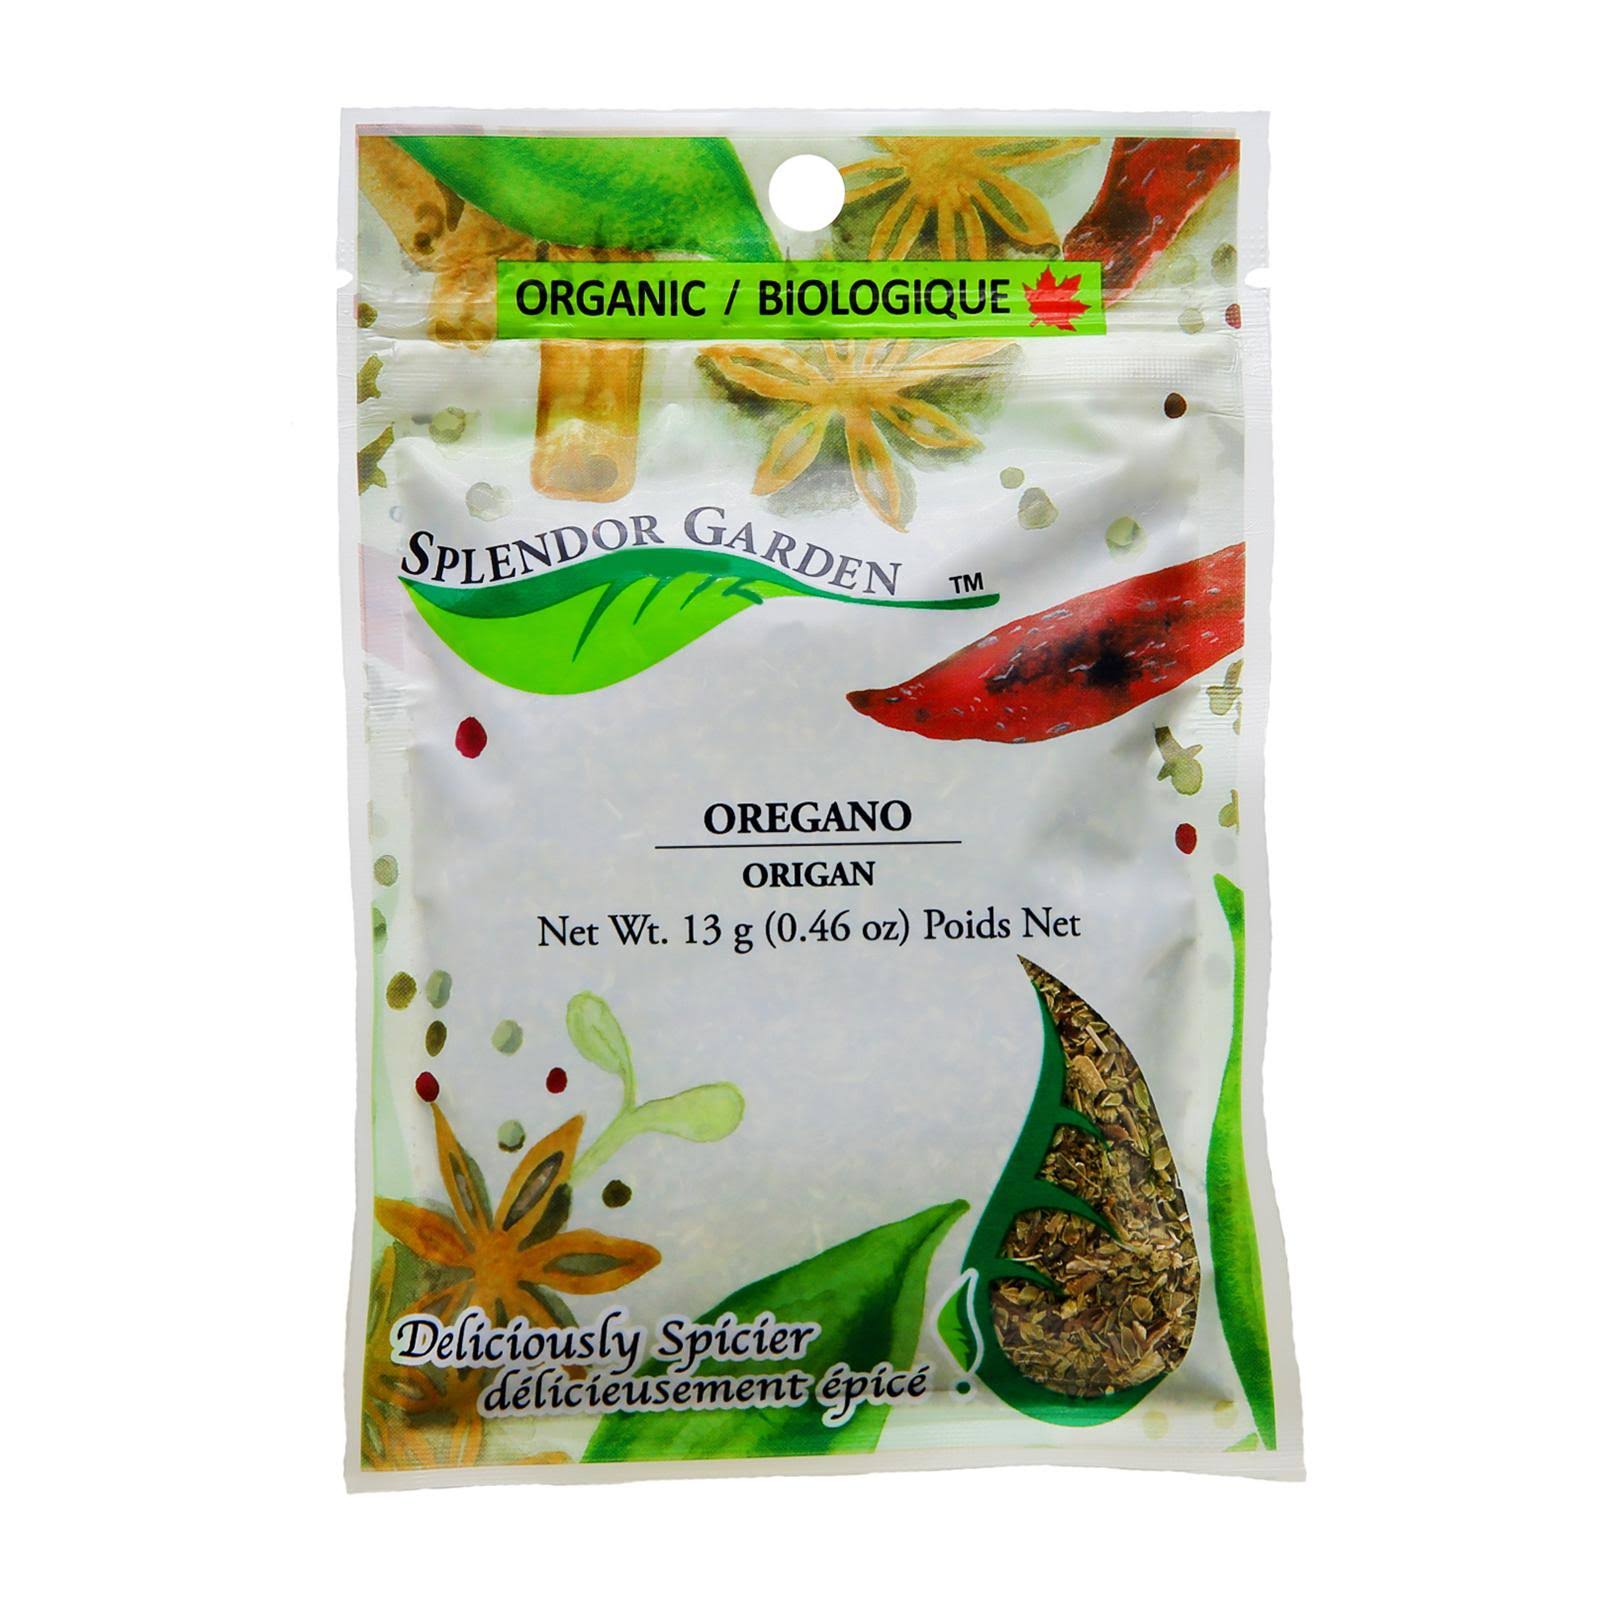 Splendor Garden Spice Oregano - 13 g